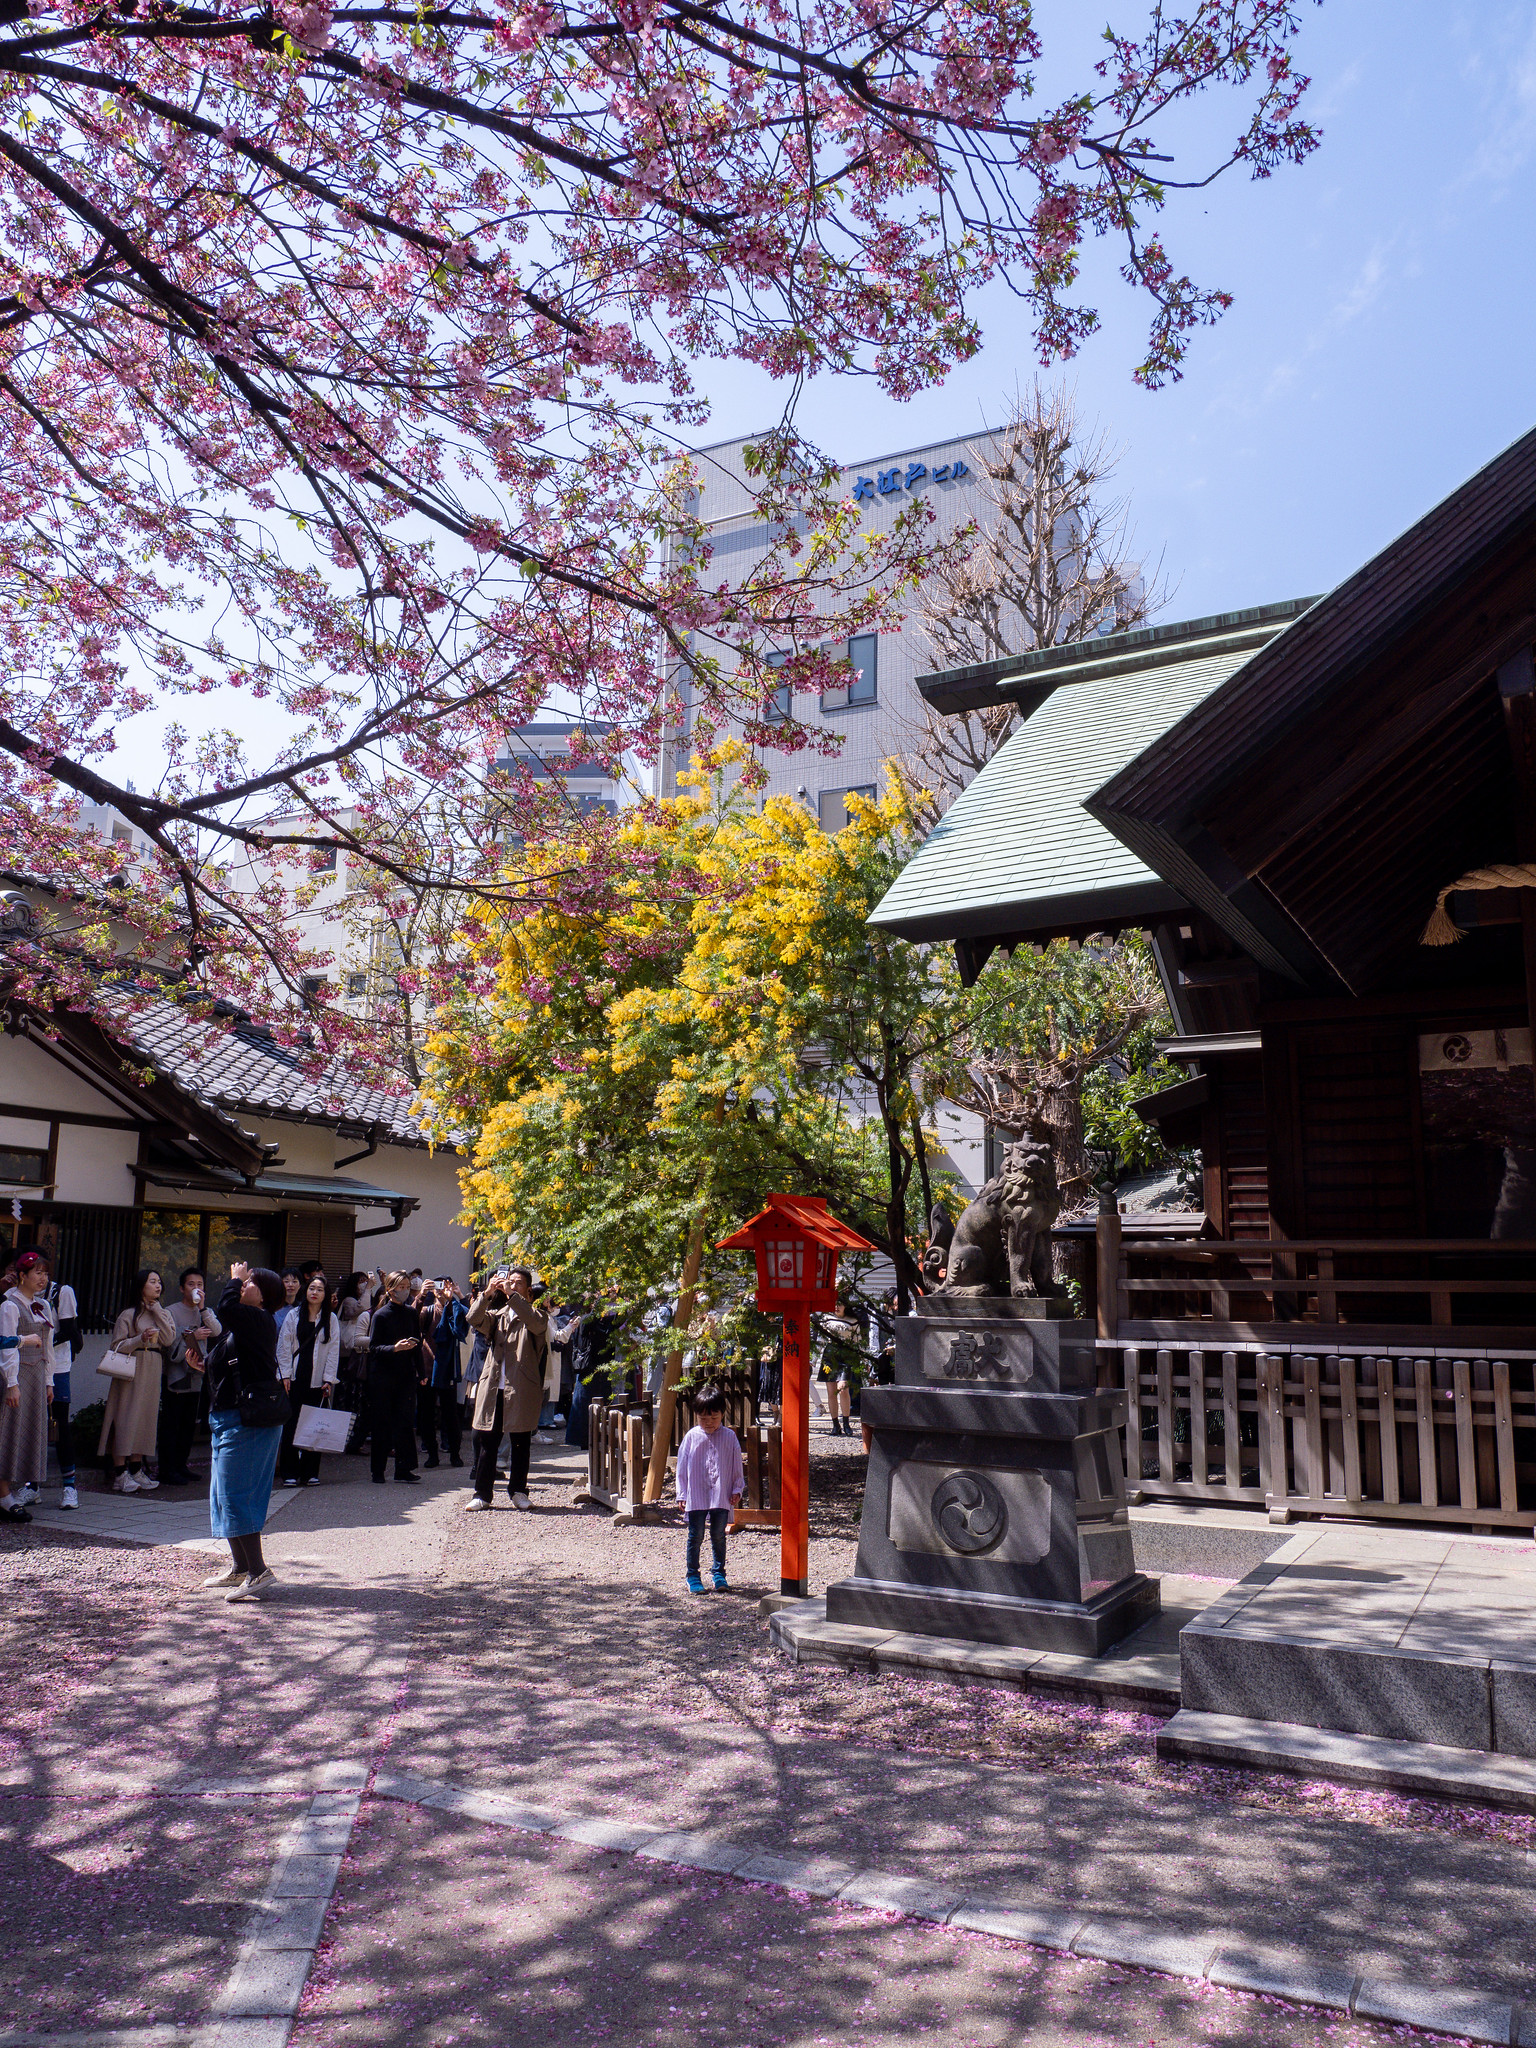 蔵前神社と東京スカイツリー #河津桜 #ミモザ